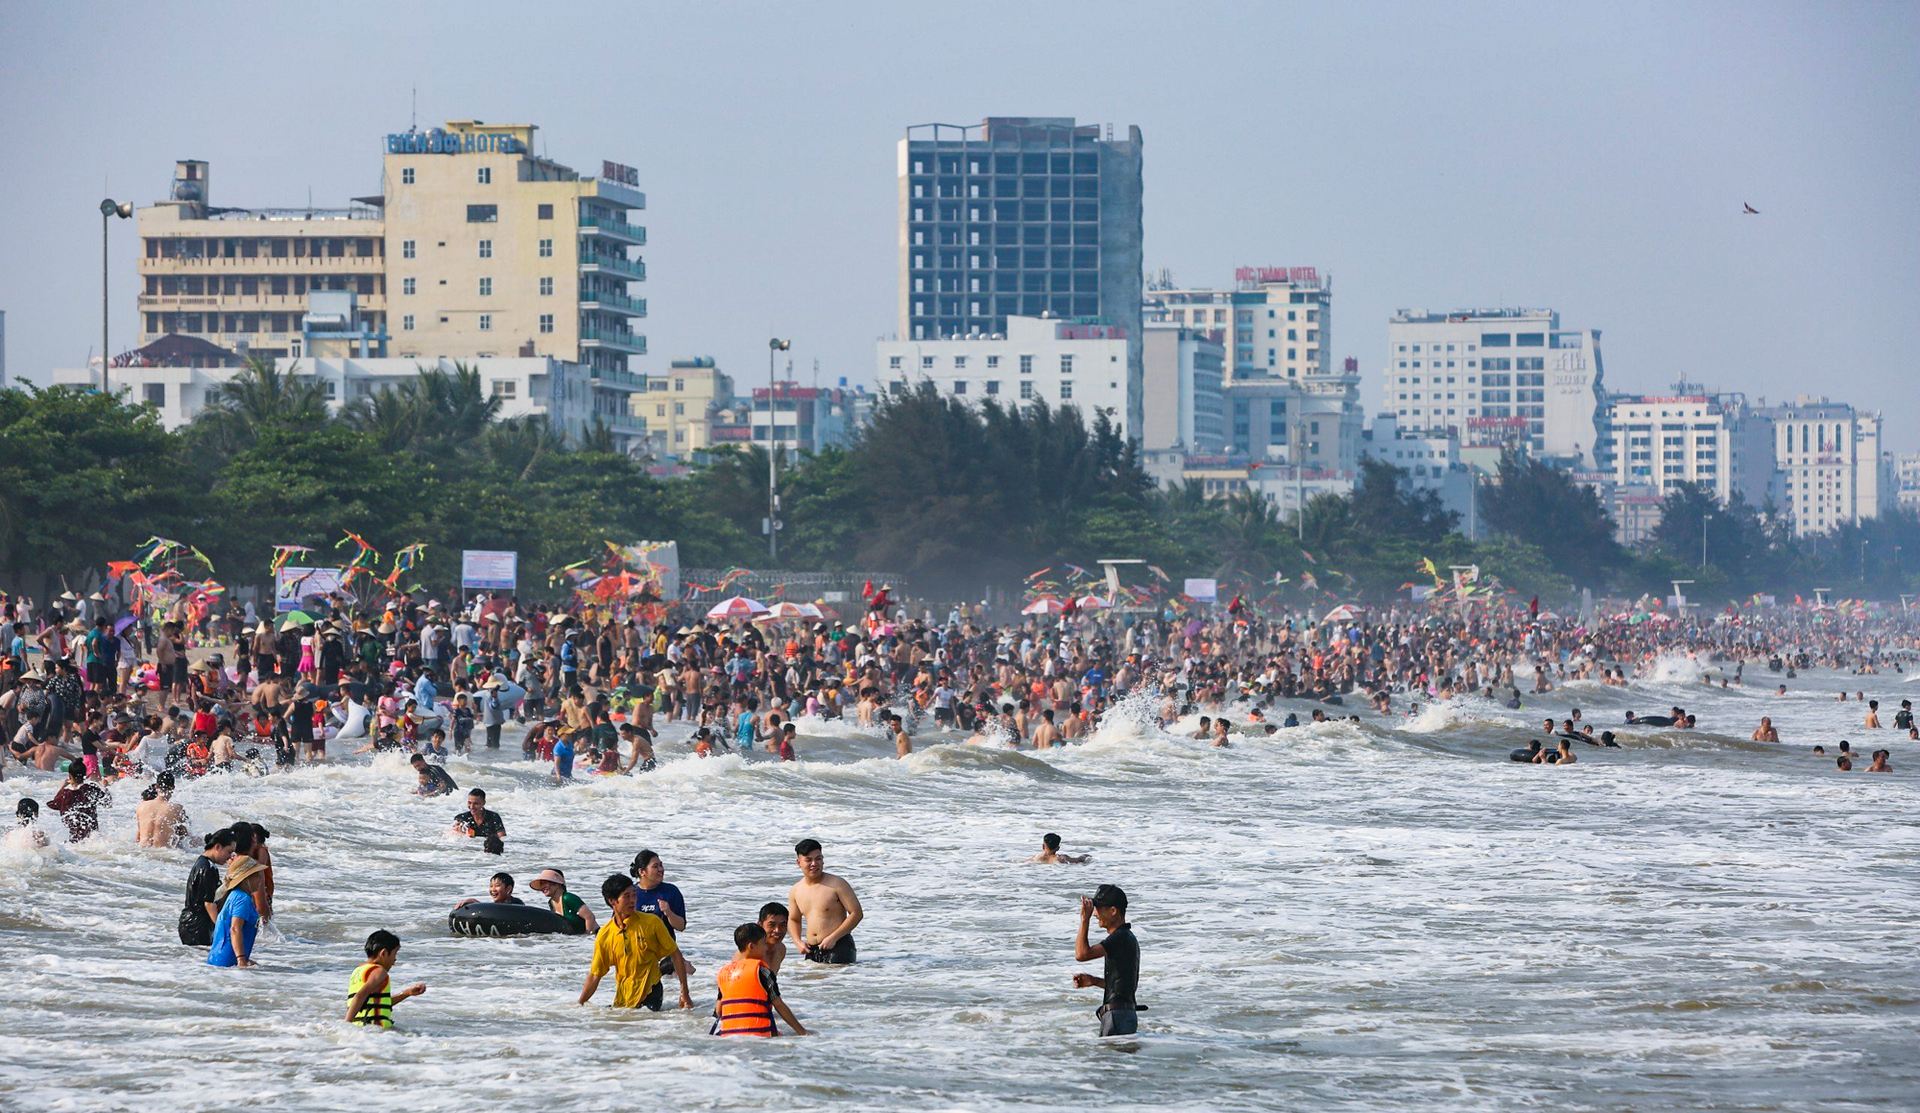 Vạn người đổ về bãi biển Sầm Sơn trong ngày nắng nóng đỉnh điểm - 10